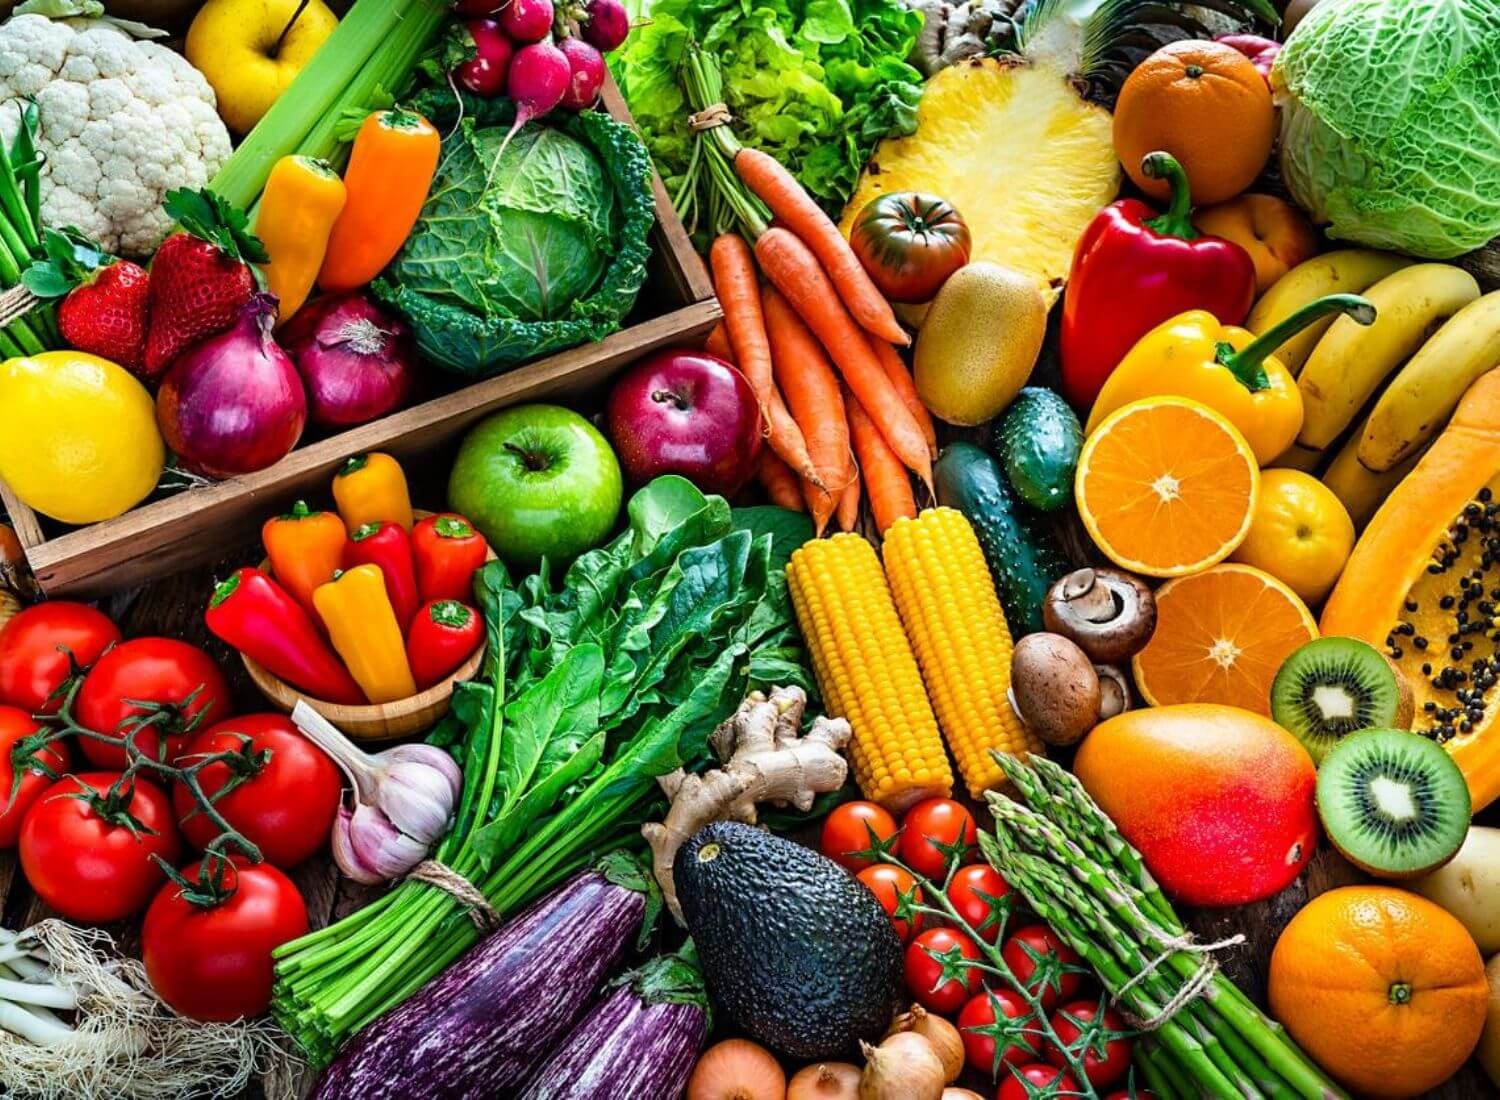 You like vegetables and fruits. Овощи и фрукты. Продукты овощи. Овощи разные. Красивые овощи и фрукты.